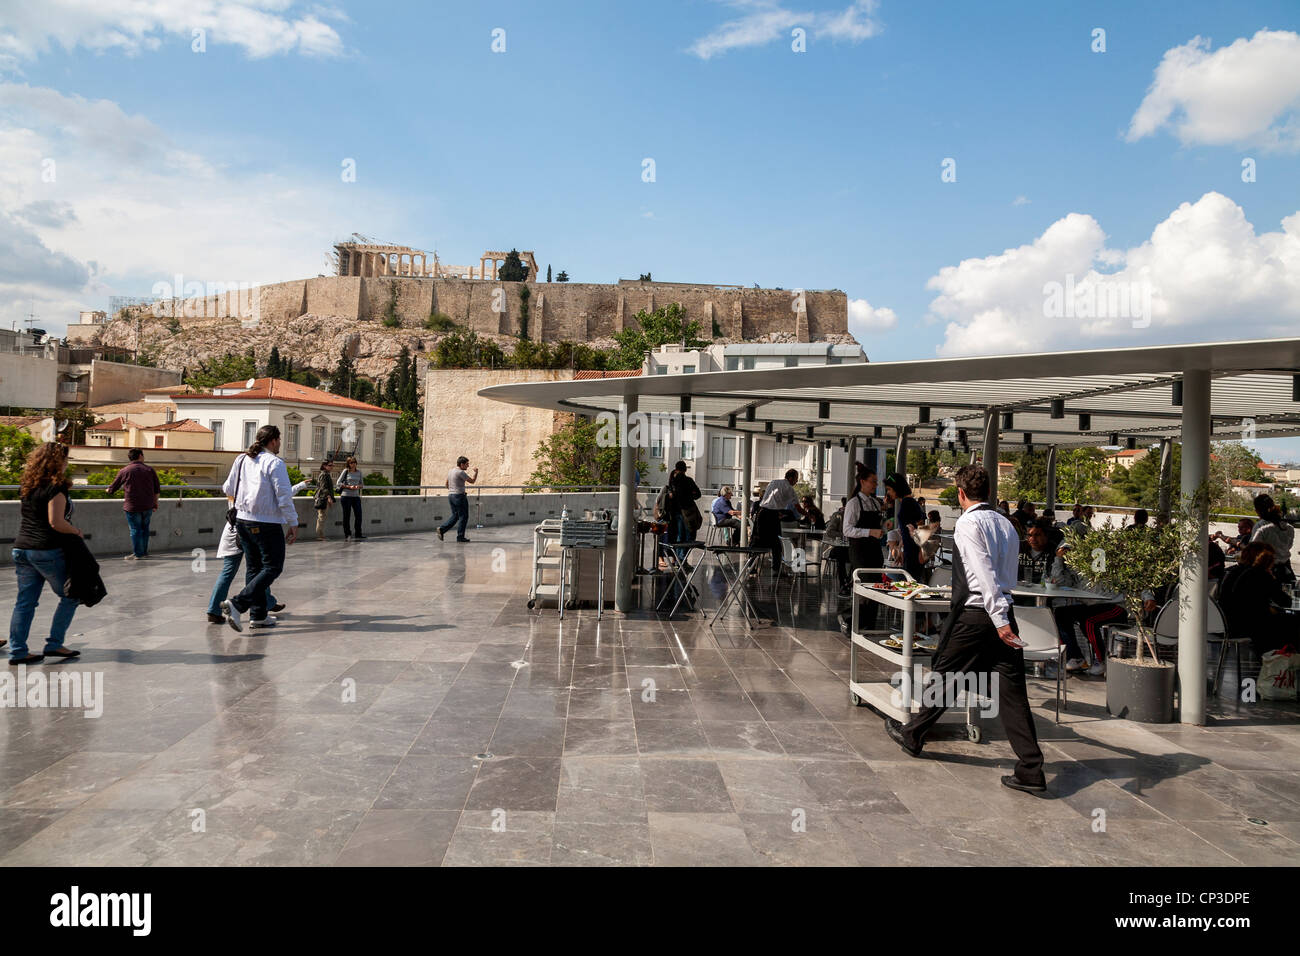 Das Akropolis Museum Cafe & Restaurant mit einem atemberaubenden Blick auf die Akropolis von Athen. Griechenland. Stockfoto